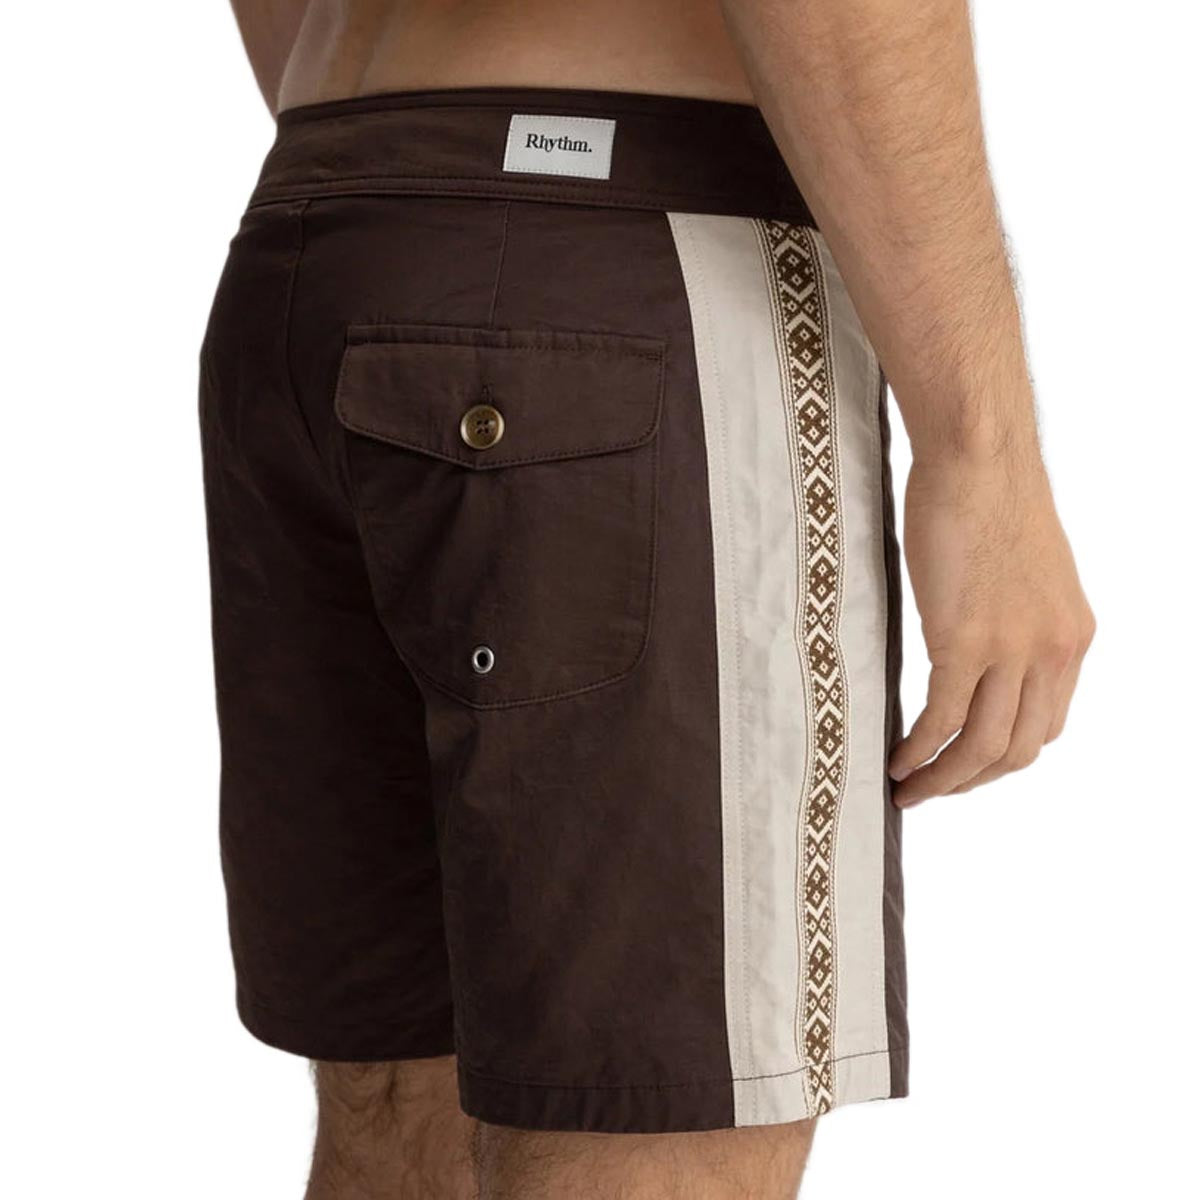 Rhythm Sidewinder Trunk Shorts - Chocolate image 3